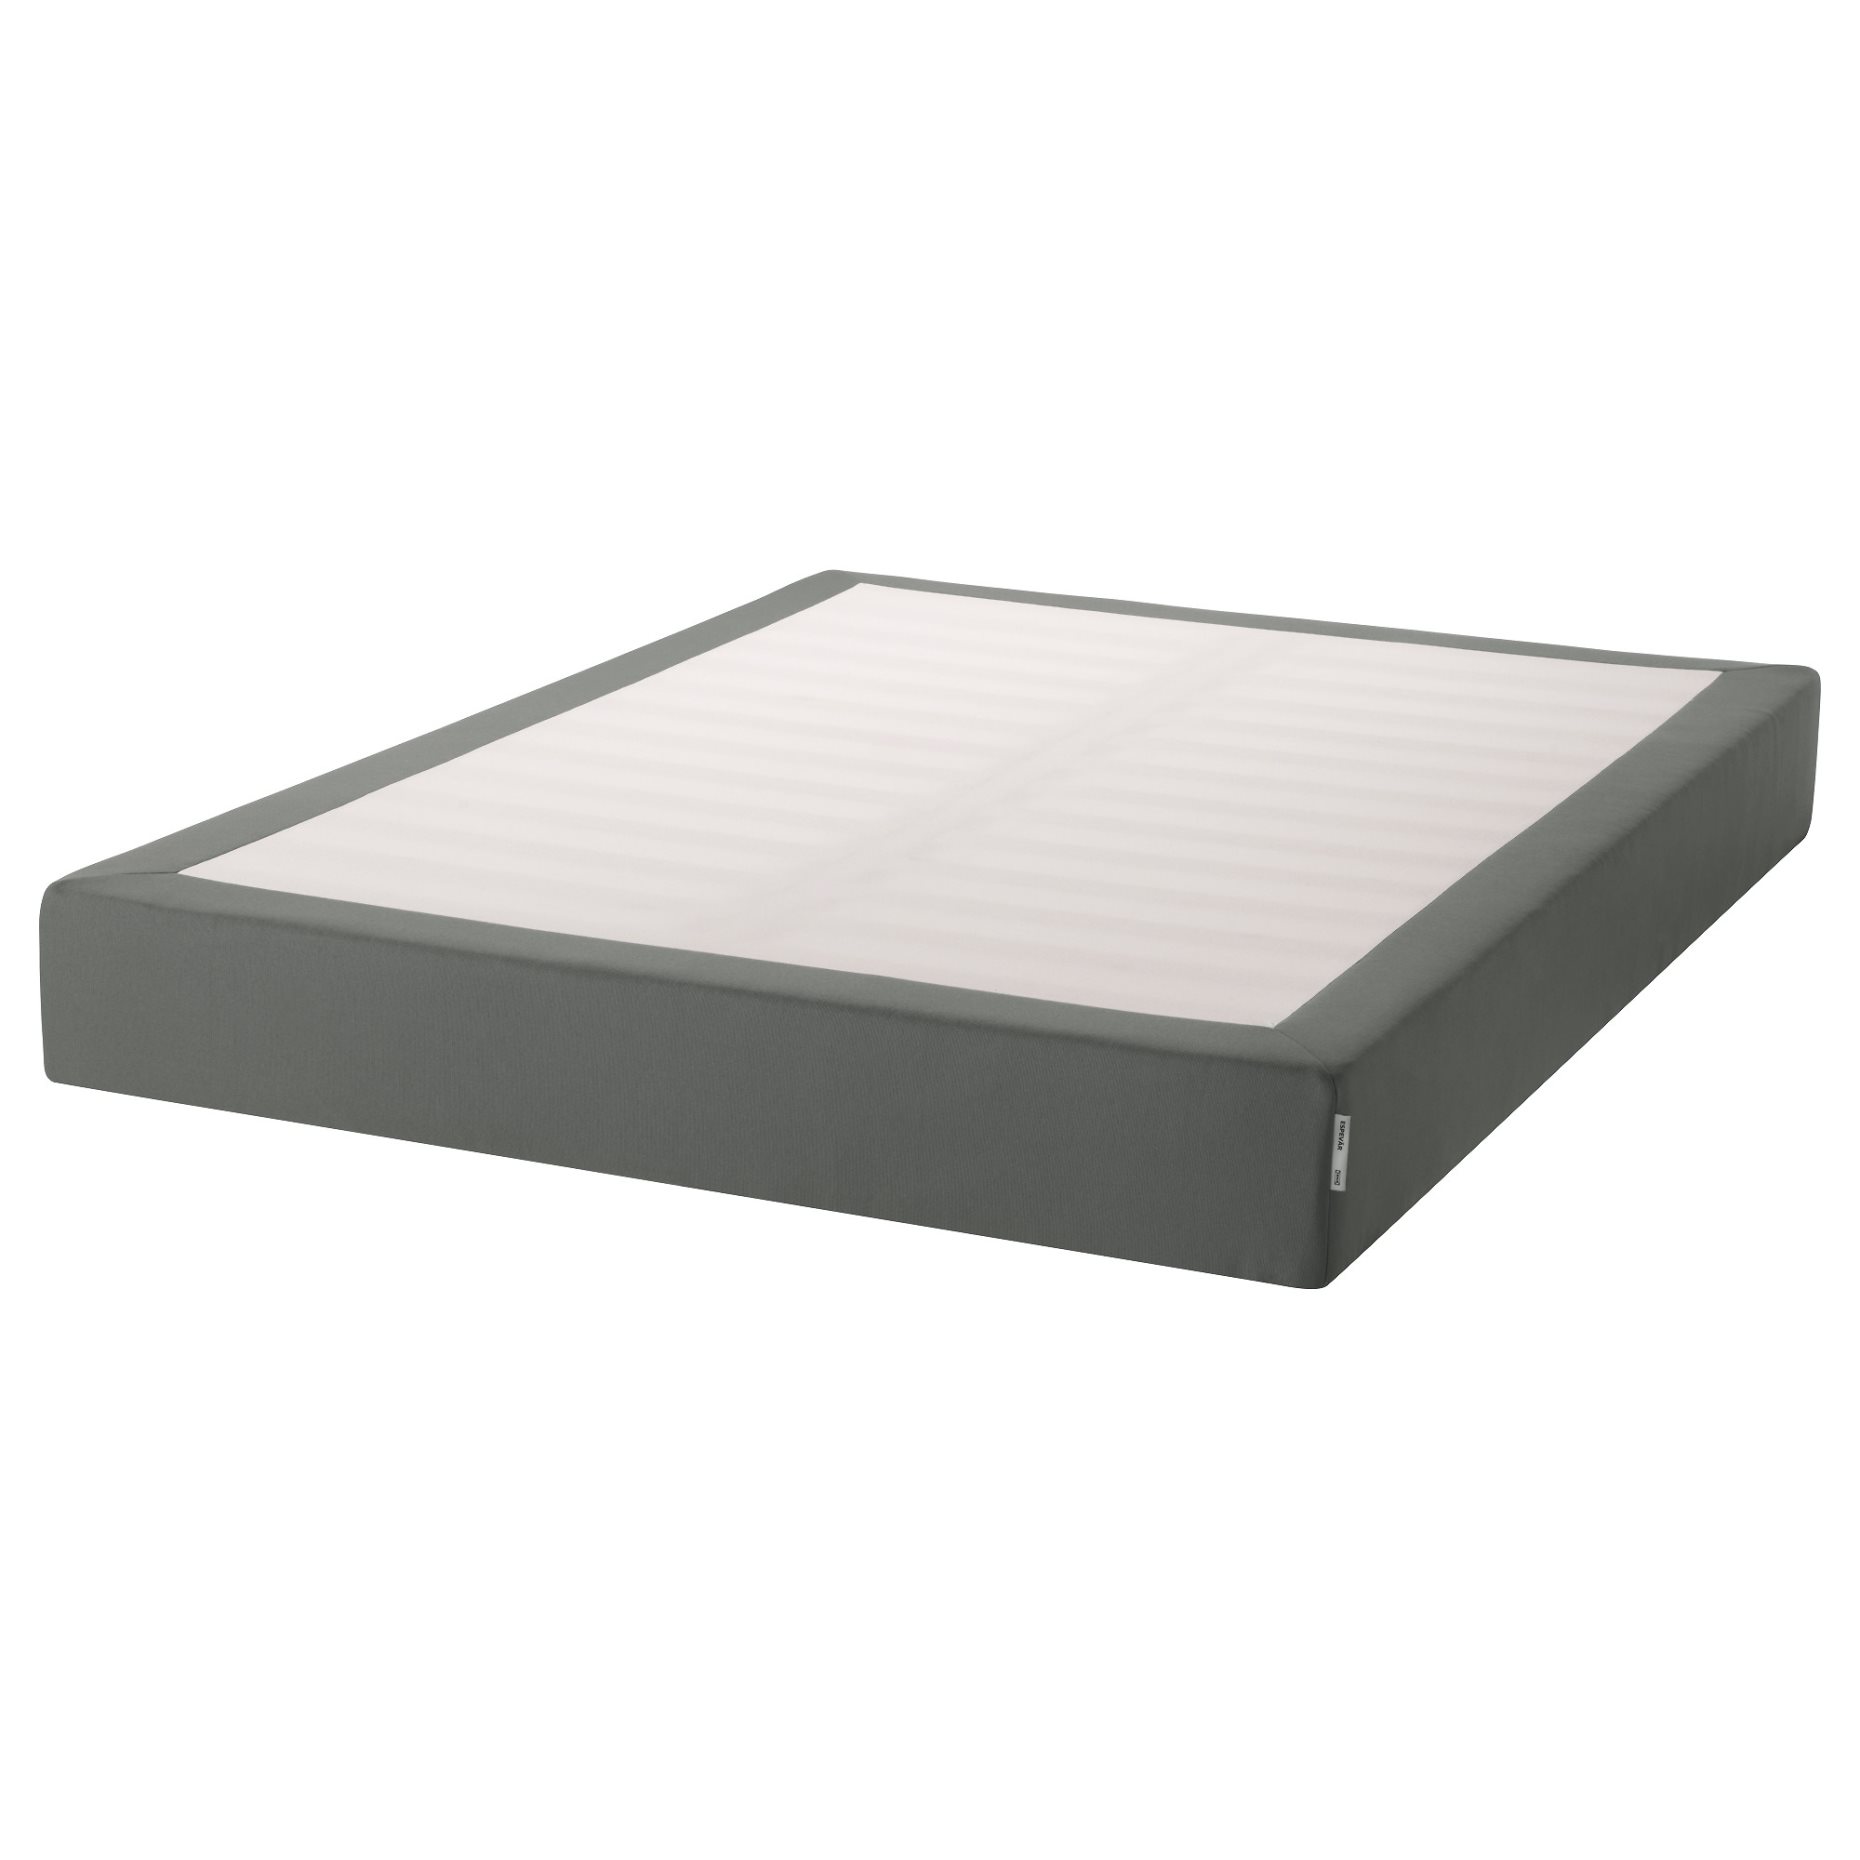 ESPEVÄR, slatted mattress base, 391.255.46